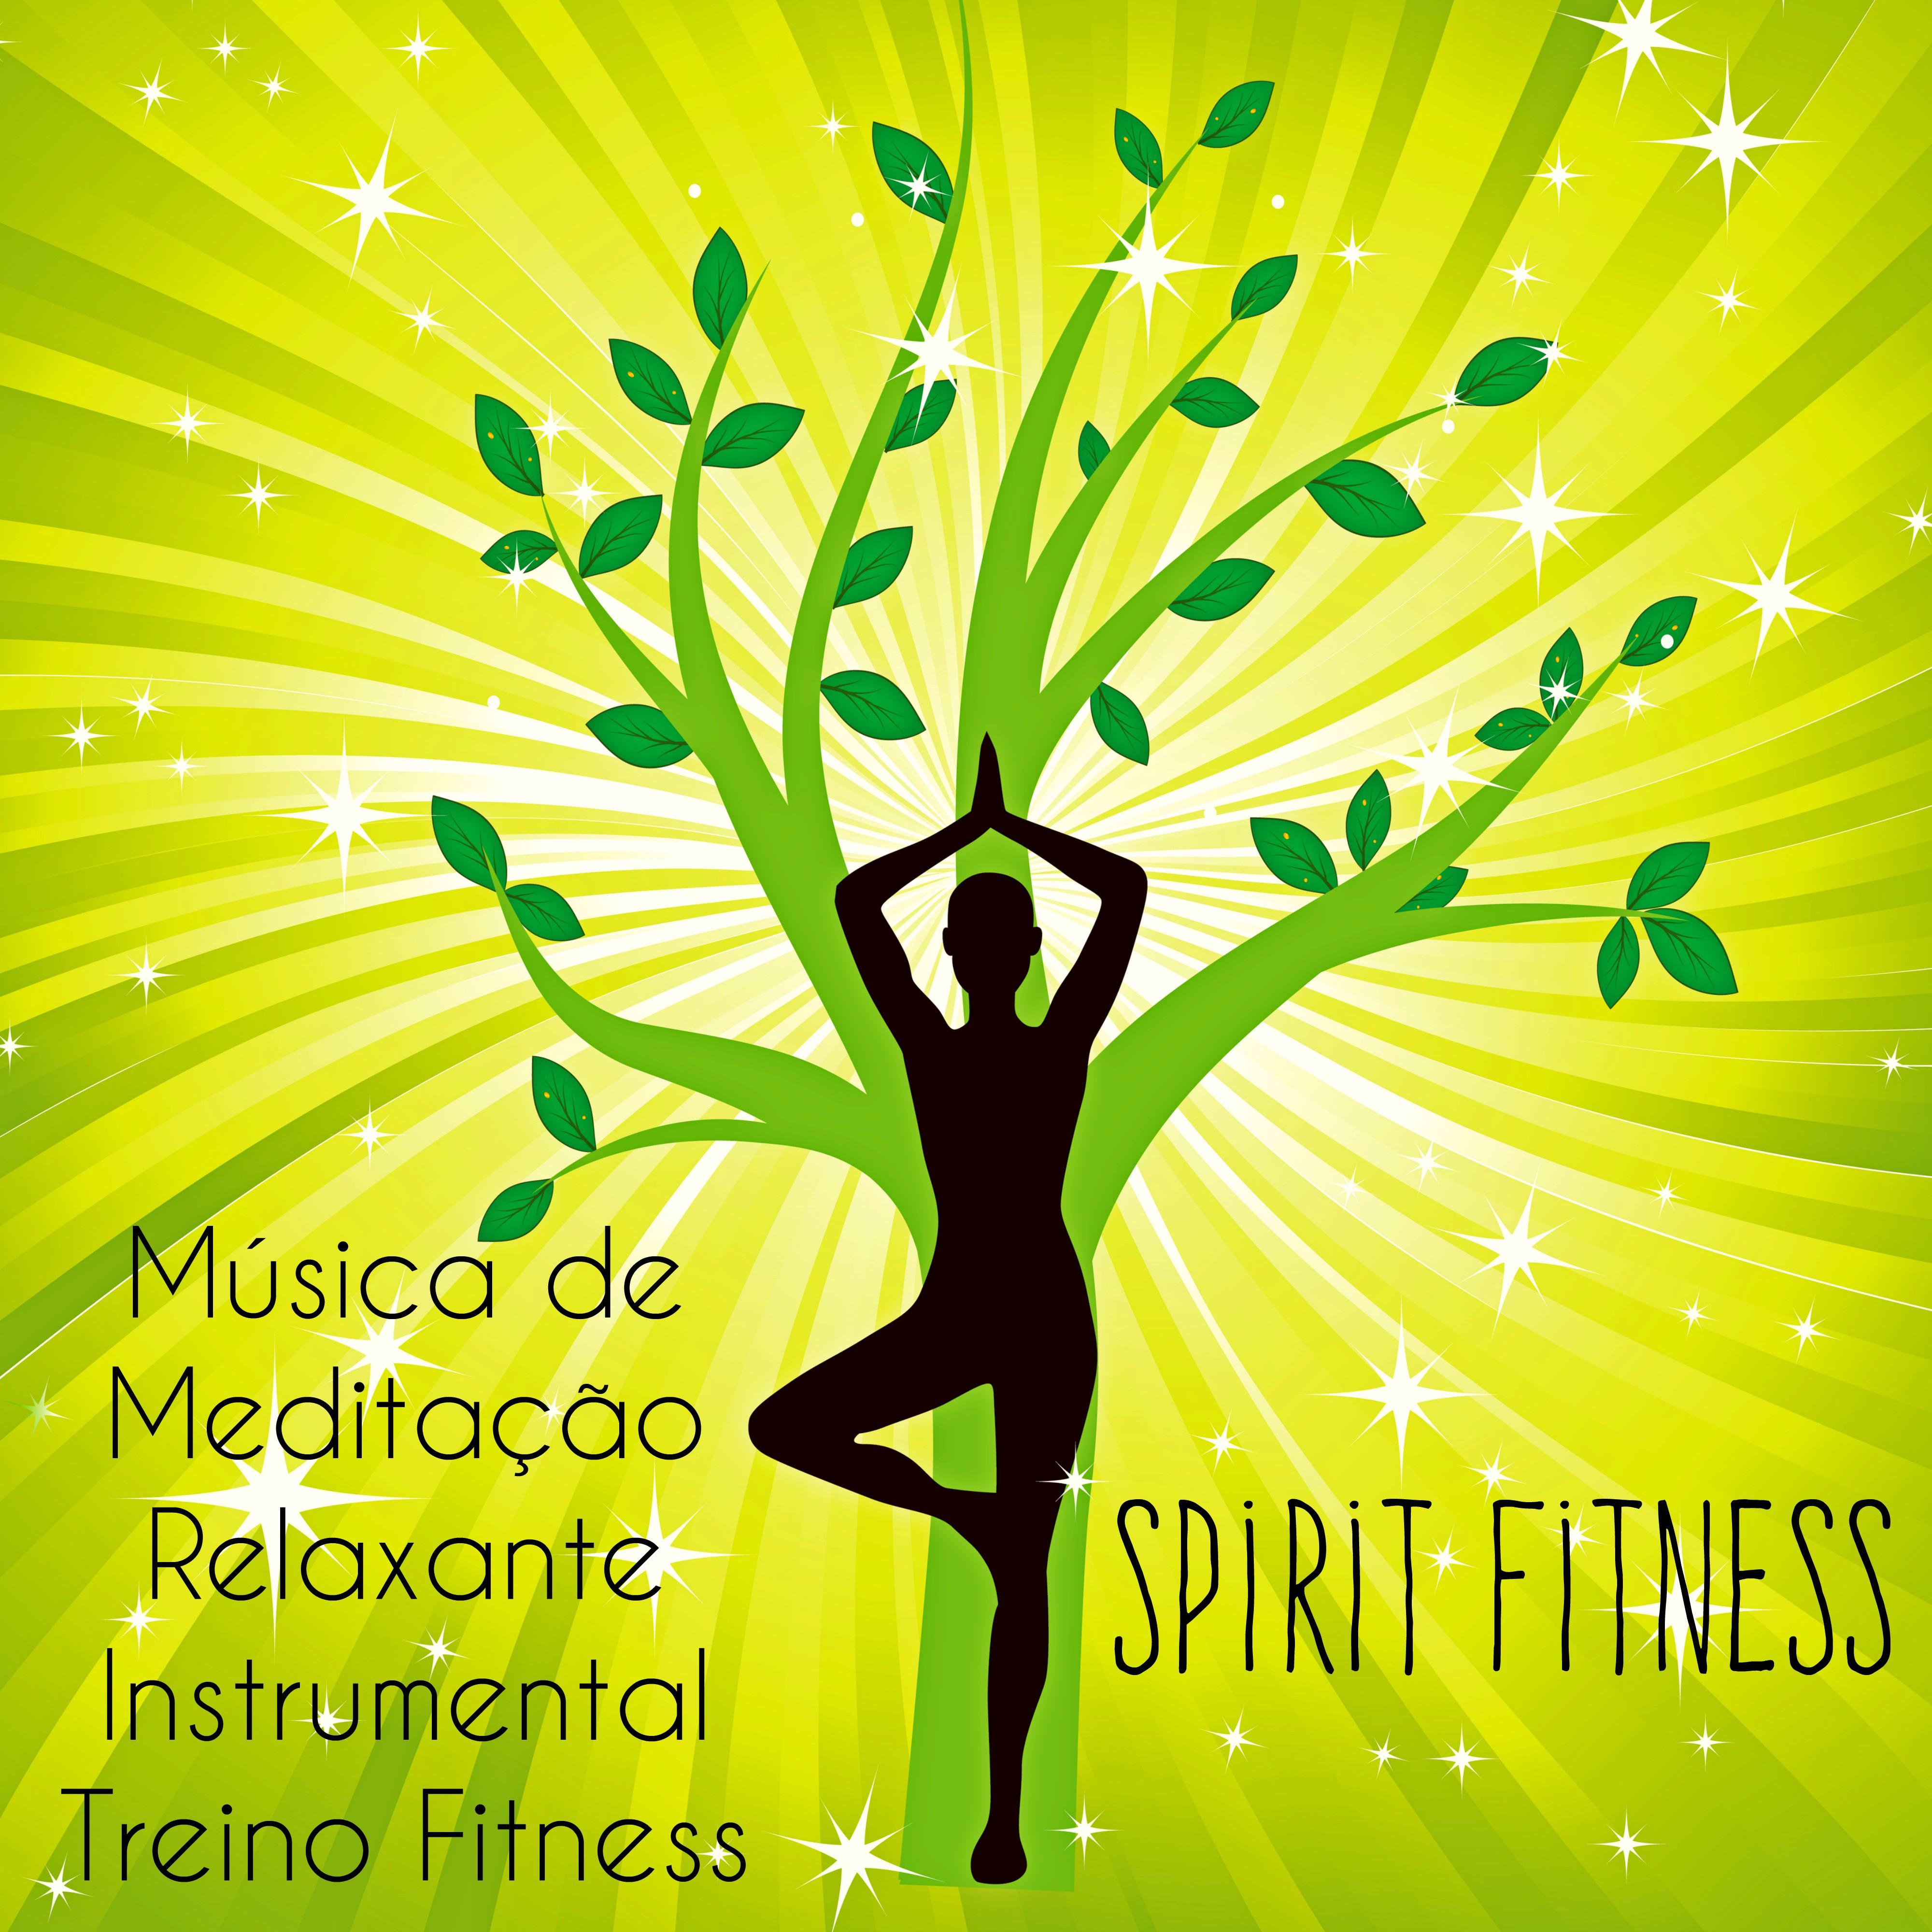 Spirit Fitness  Mu sica de Medita o Relaxante Instrumental Treino Fitness para Reduzir a Ansiedade Saude e Bem Estar